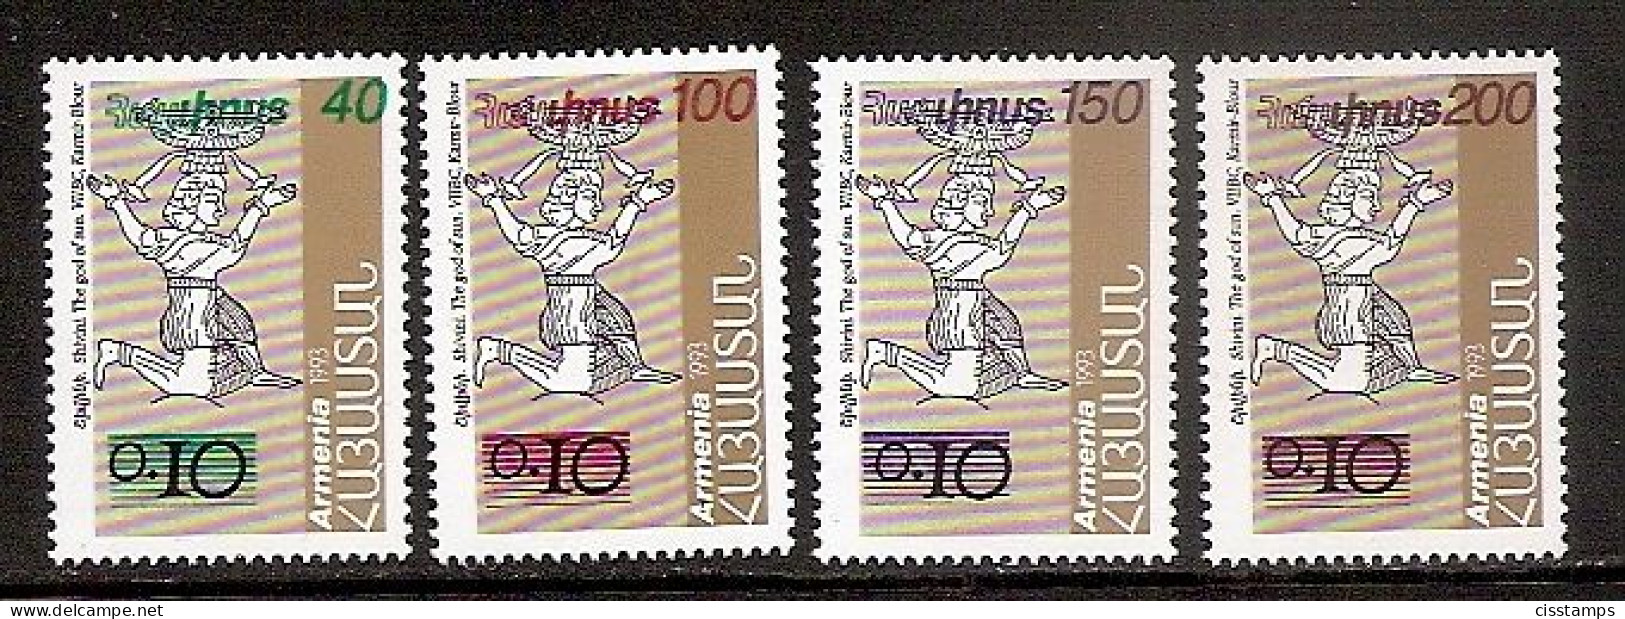 ARMENIA 1996●Definitives Surcharges●Mi276-79 MNH - Armenien